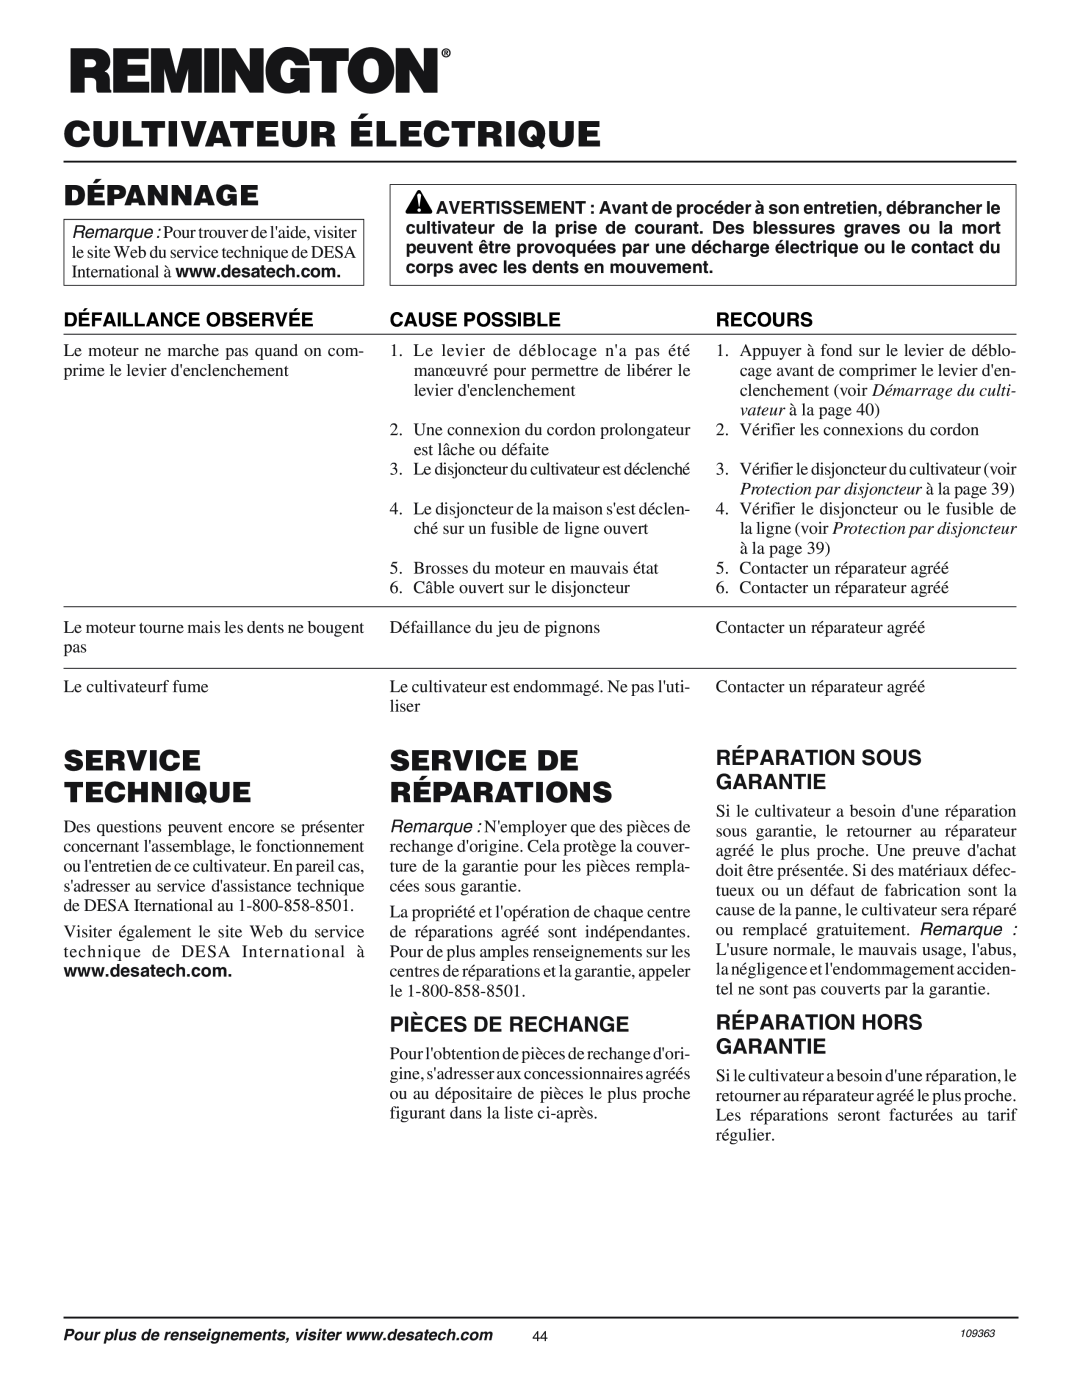 Remington 109312-01 Dépannage, Service Technique, Service De Réparations, Réparation Sous Garantie, Pièces De Rechange 